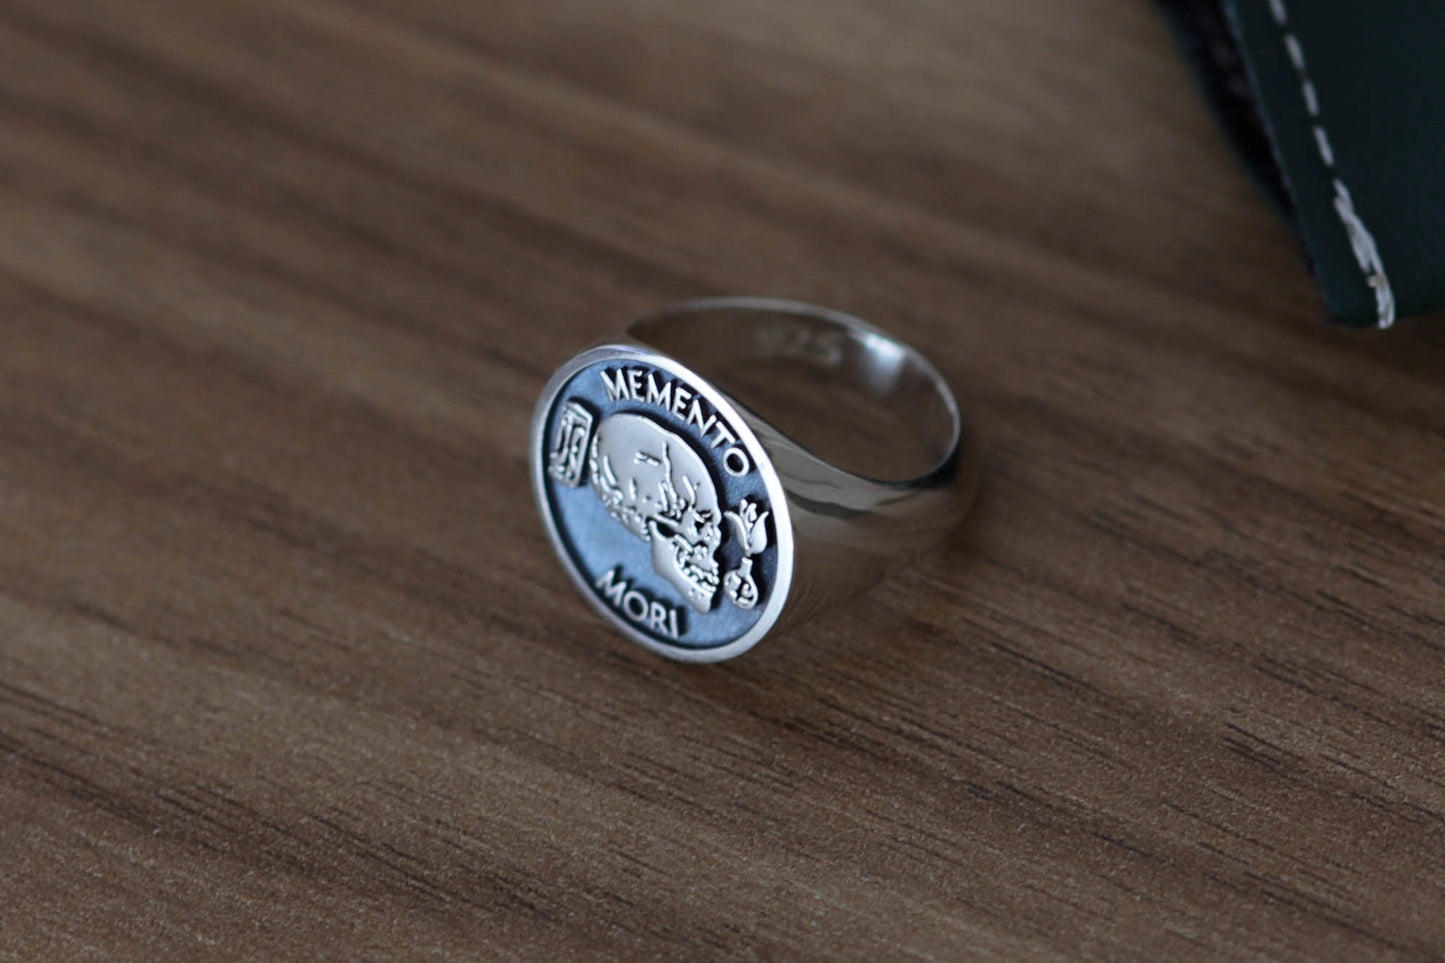 Silver Memento Mori Ring